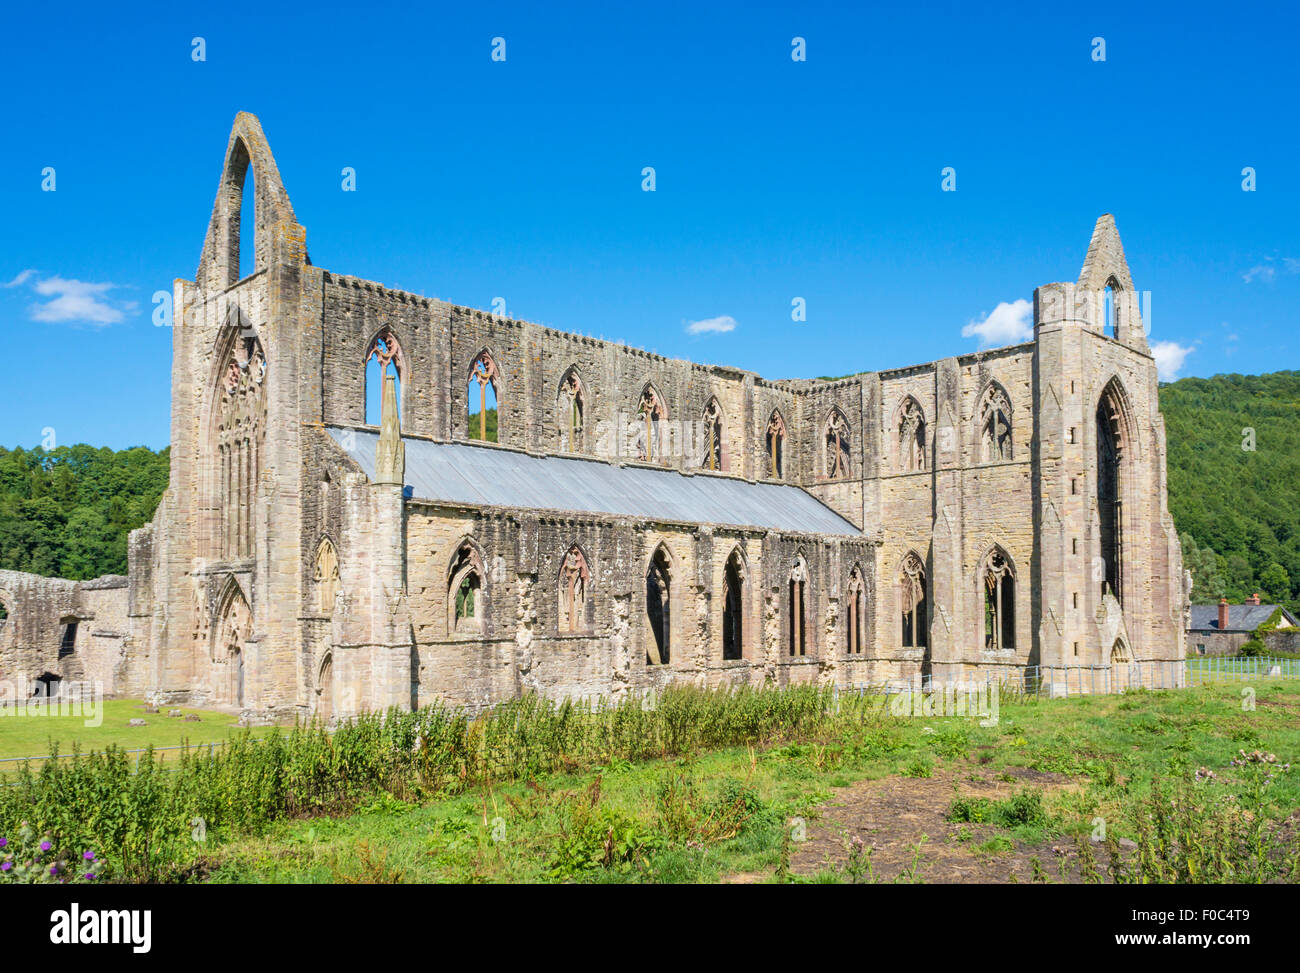 Tintern Abbey, Tintern, Wye Valley, Monmouthshire, Wales, UK, EU, Europe Stock Photo